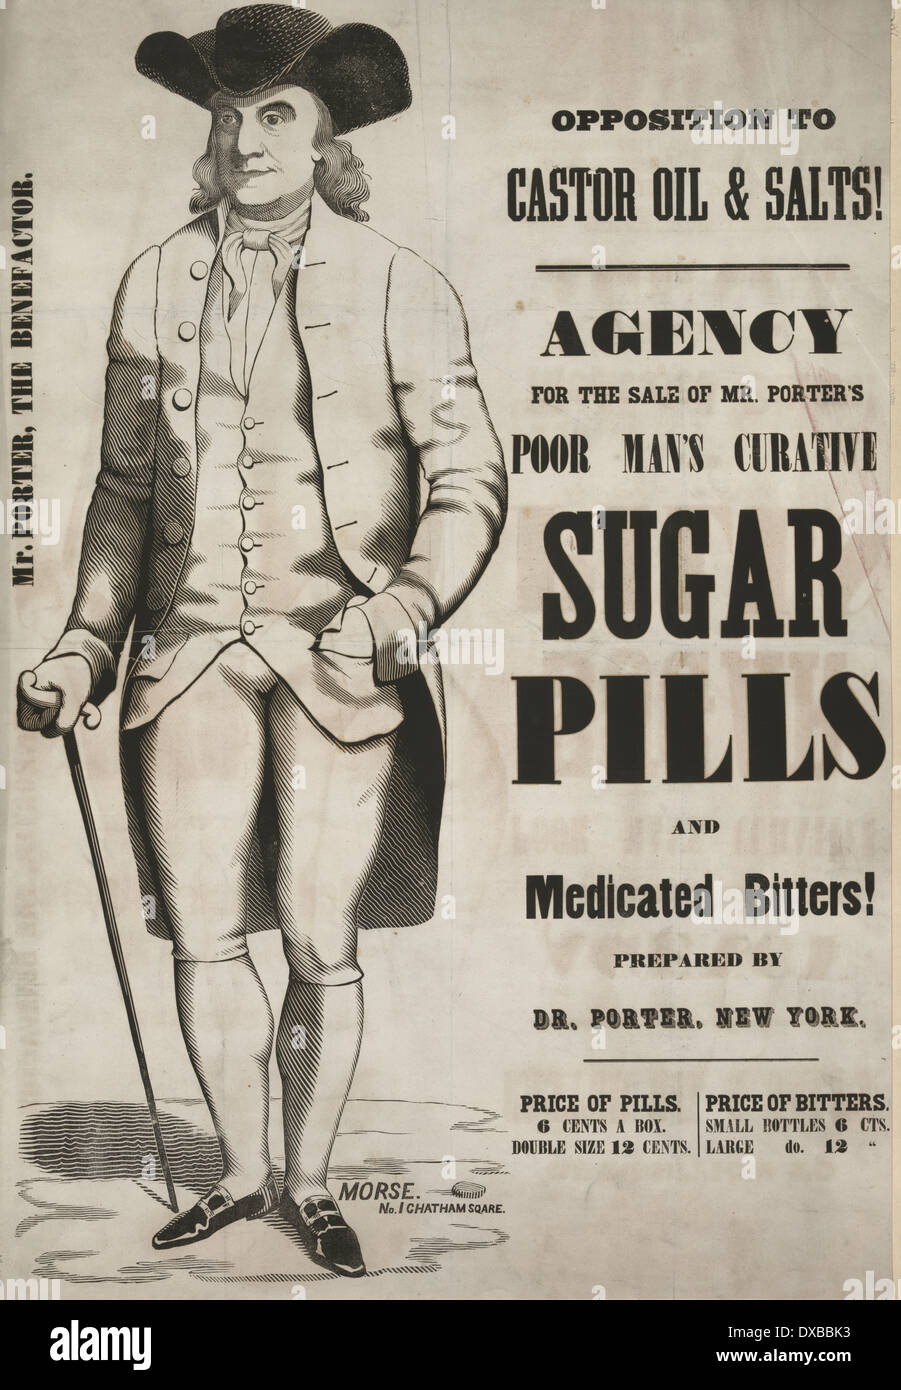 L'opposition à l'huile de ricin et de voirie ! Affiche pour la vente de M. Porter est curative de l'homme pauvre des pilules de sucre et d'aliments médicamentés bitters, vers 1845 Banque D'Images